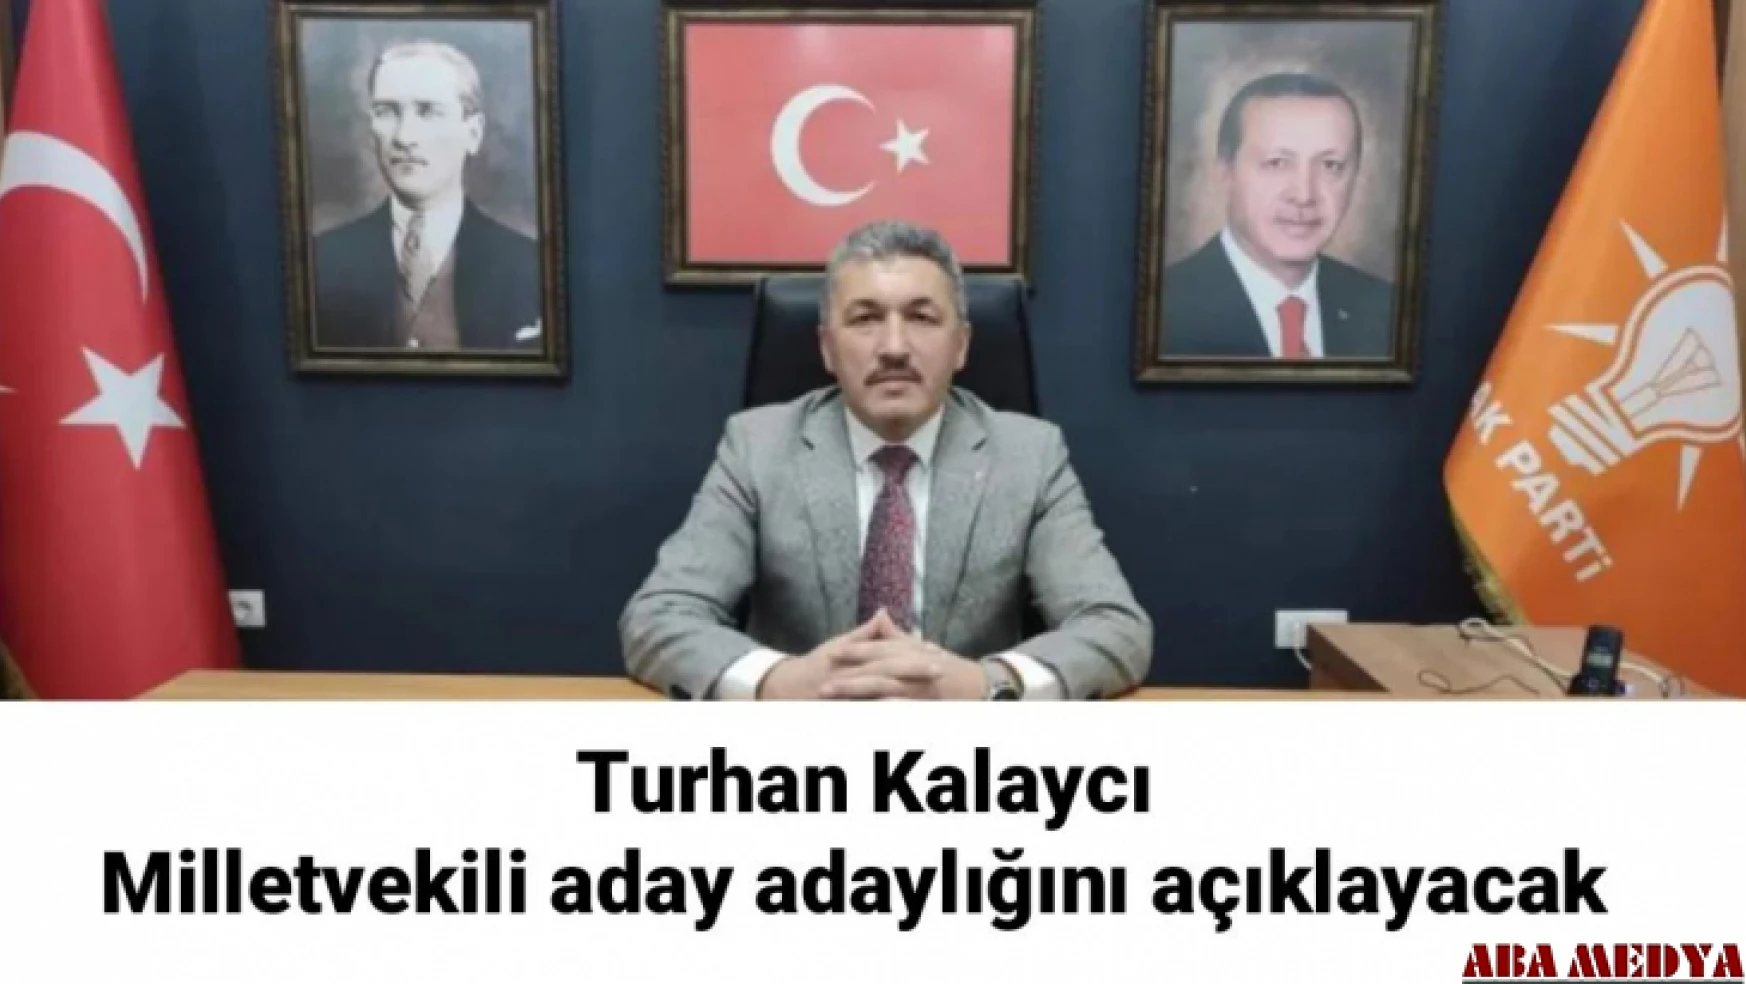 Turhan Kalaycı Milletvekili aday adaylığını açıklayacak